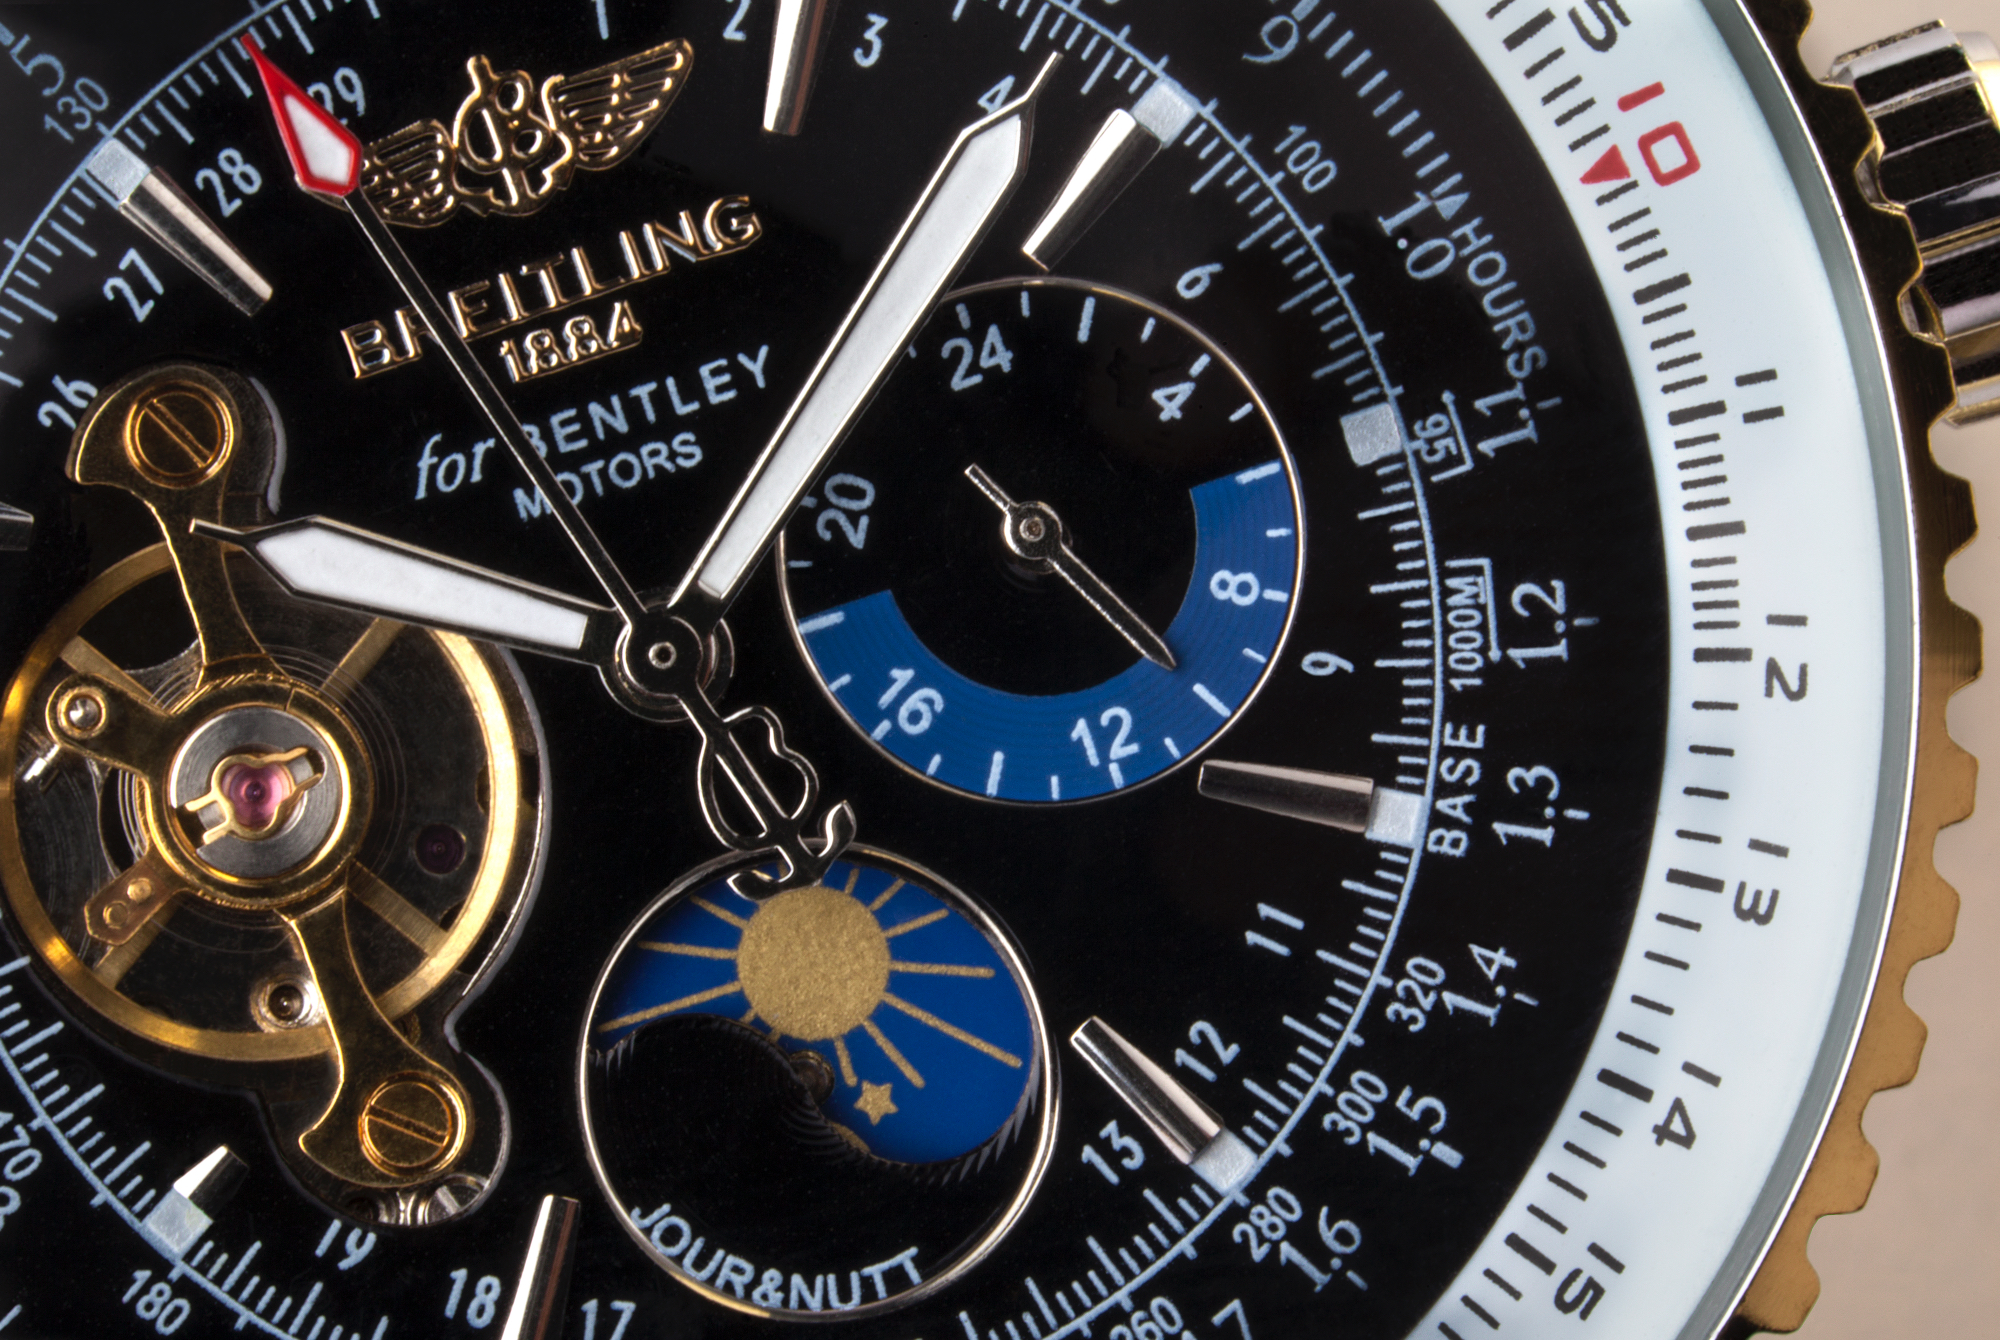 Če je ura Breitling že toliko let na trgu, potem je skoraj logično, da spada v najvišji kakovostni in cenovni razred